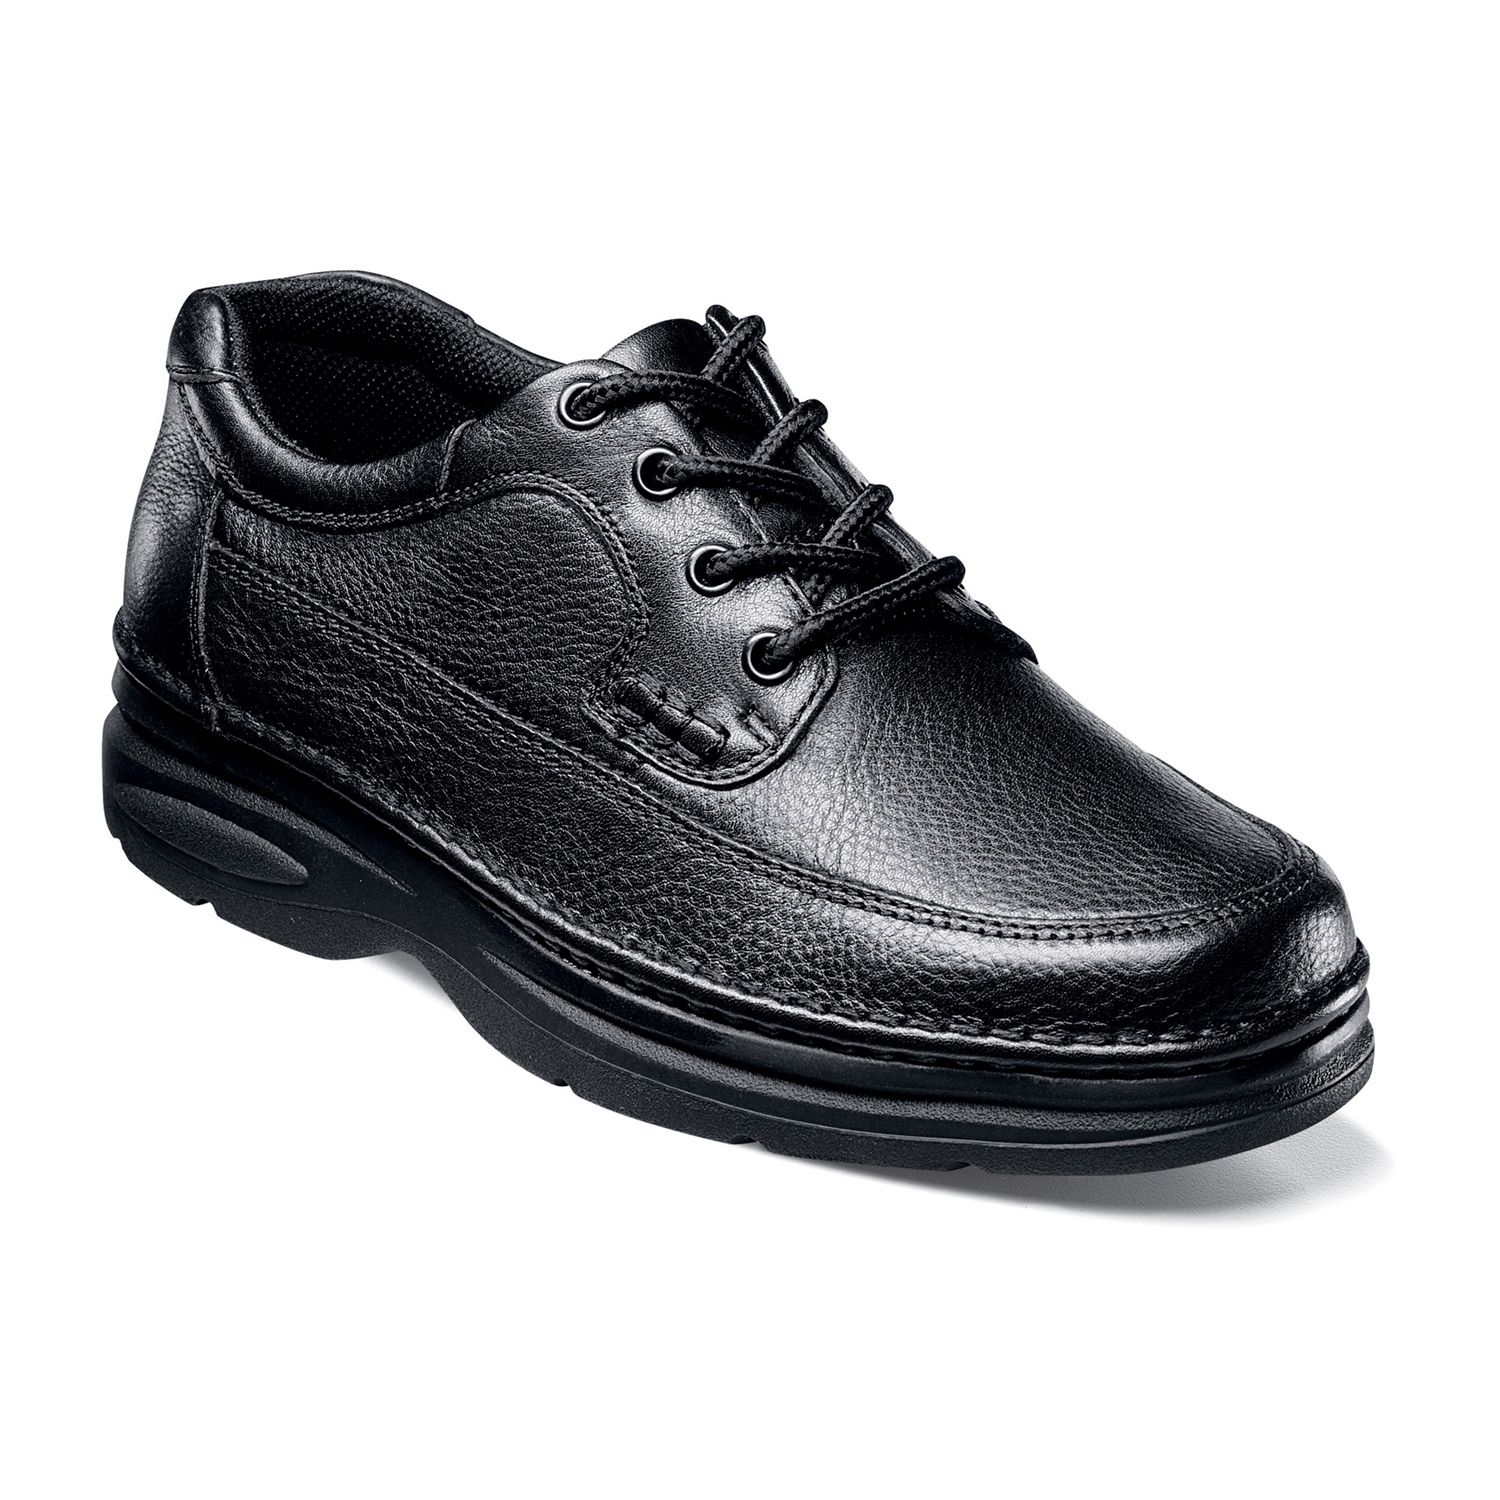 men's casual shoes size 14